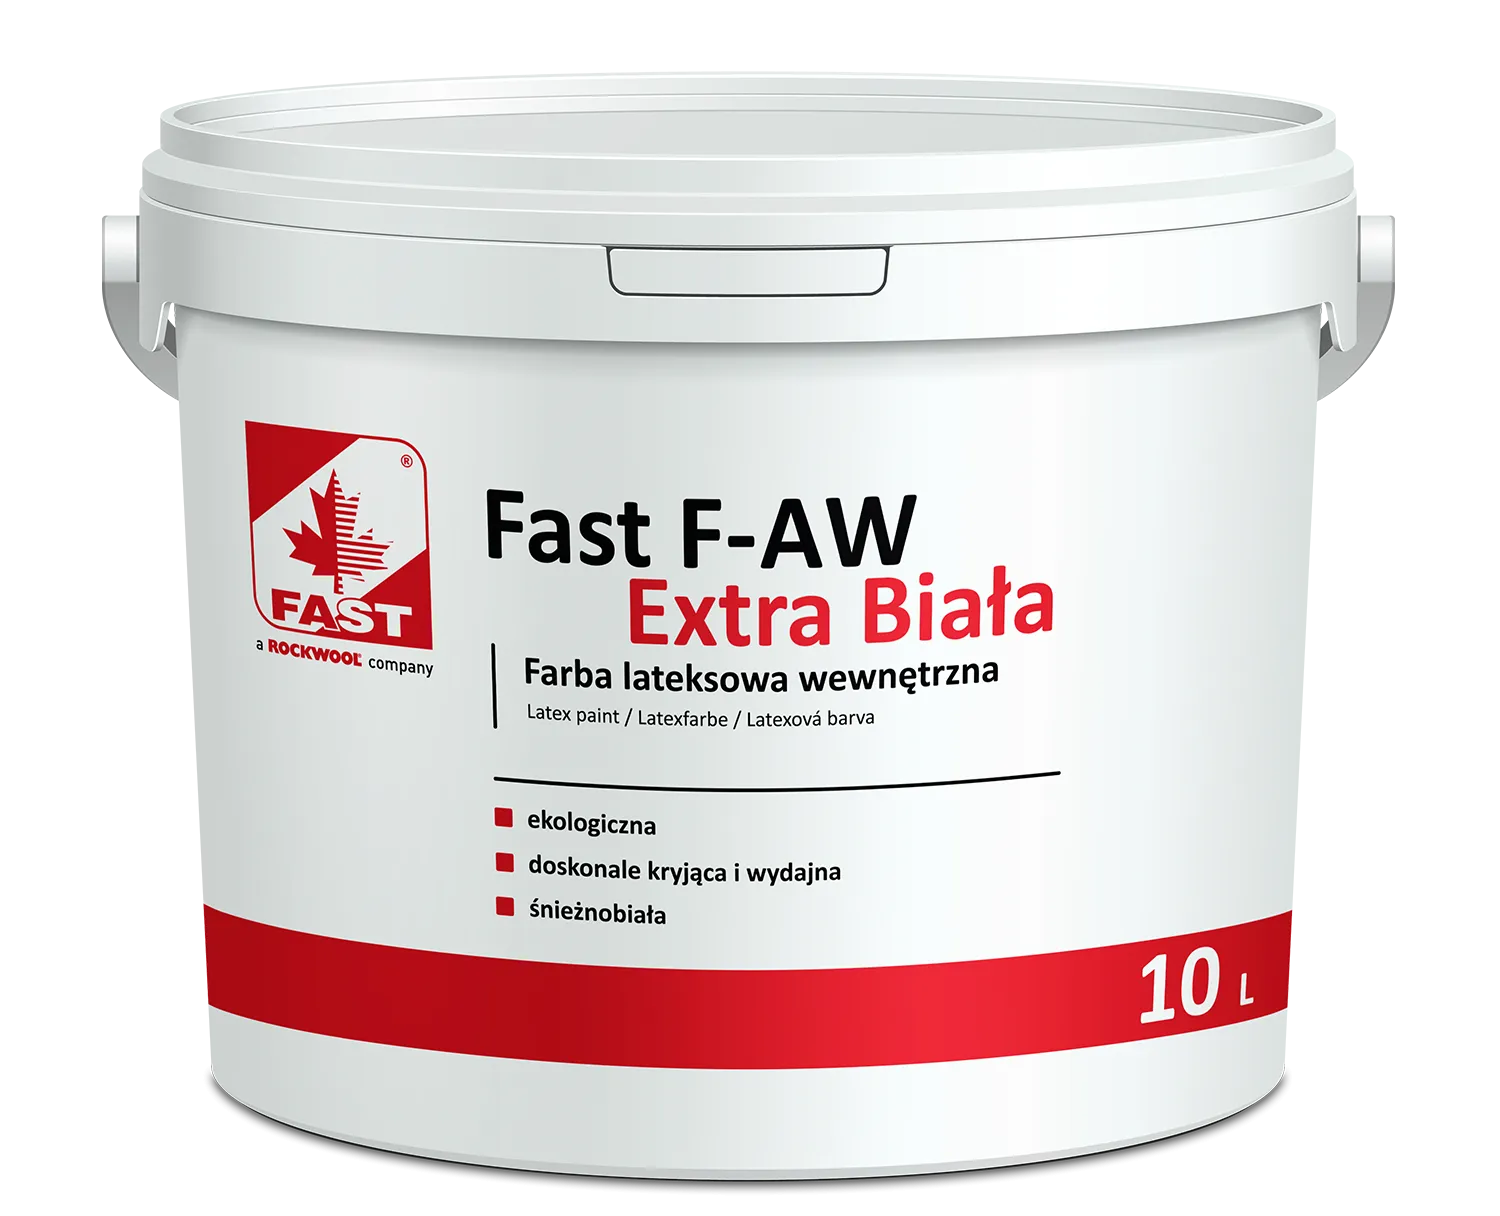 FAST F-AW Extra Biała